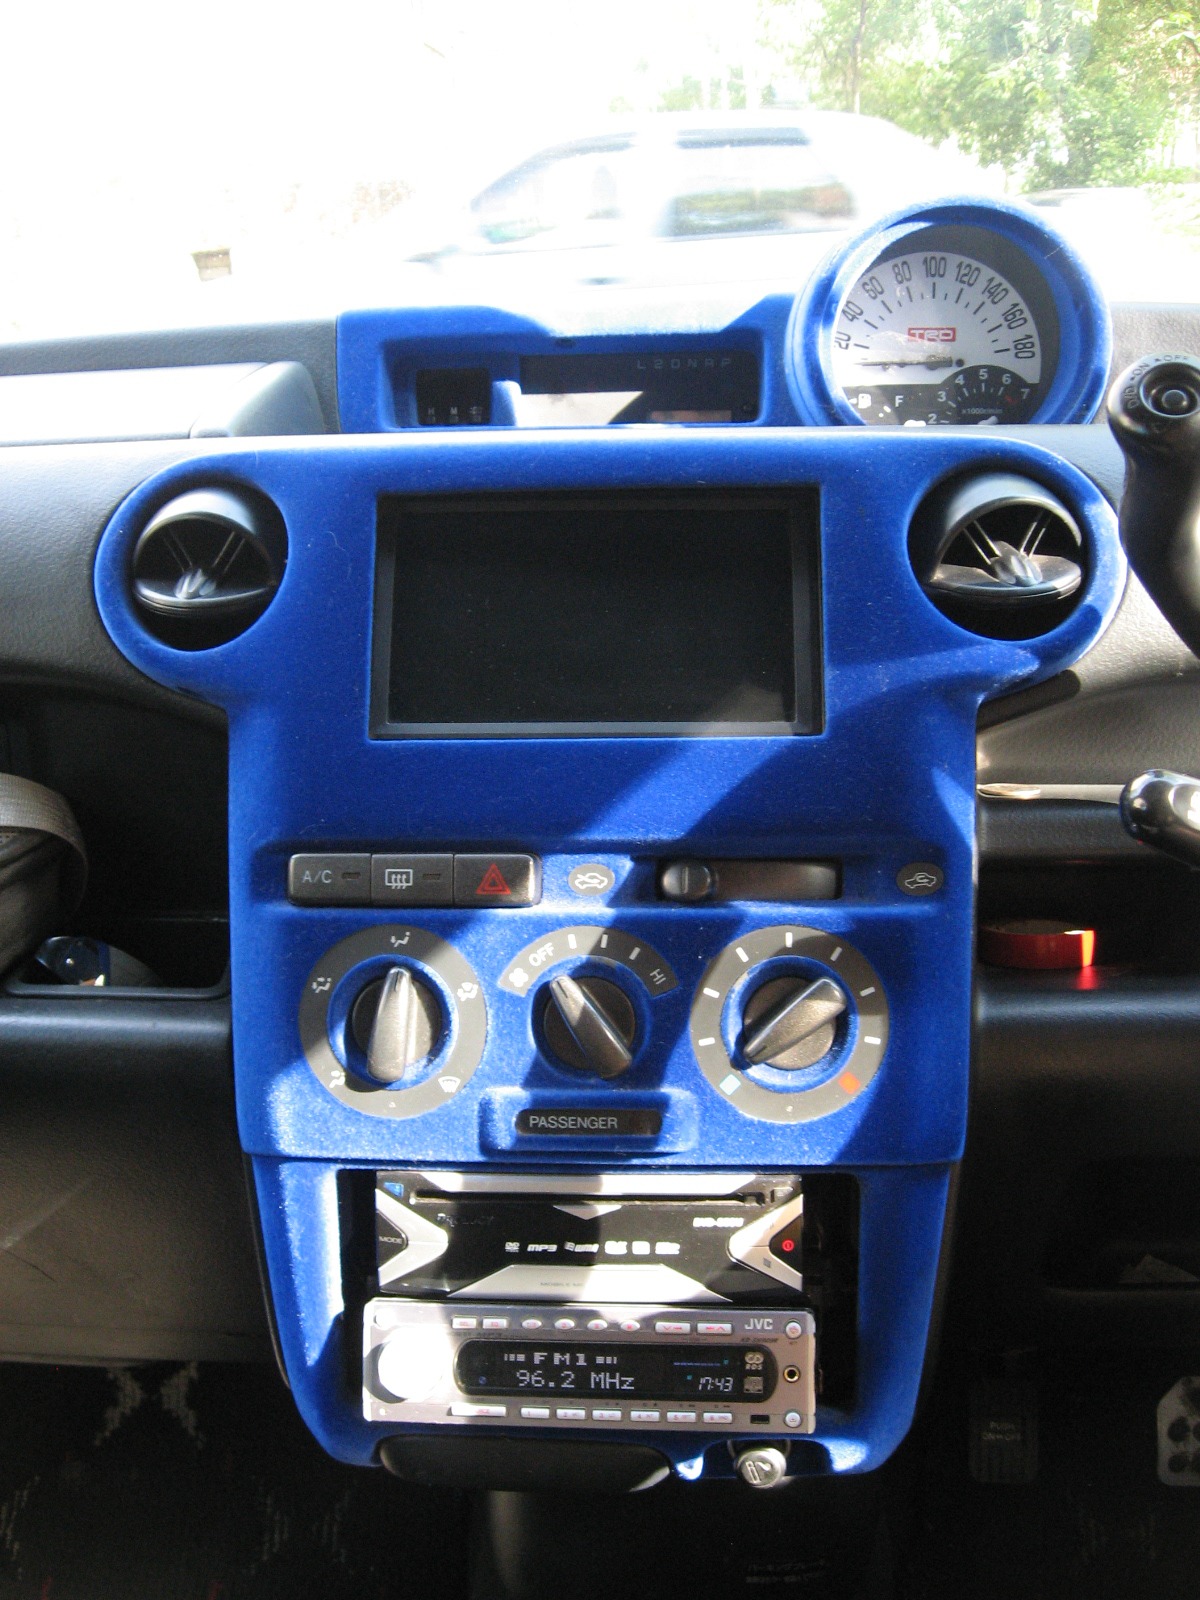   Toyota bB 15 2001 